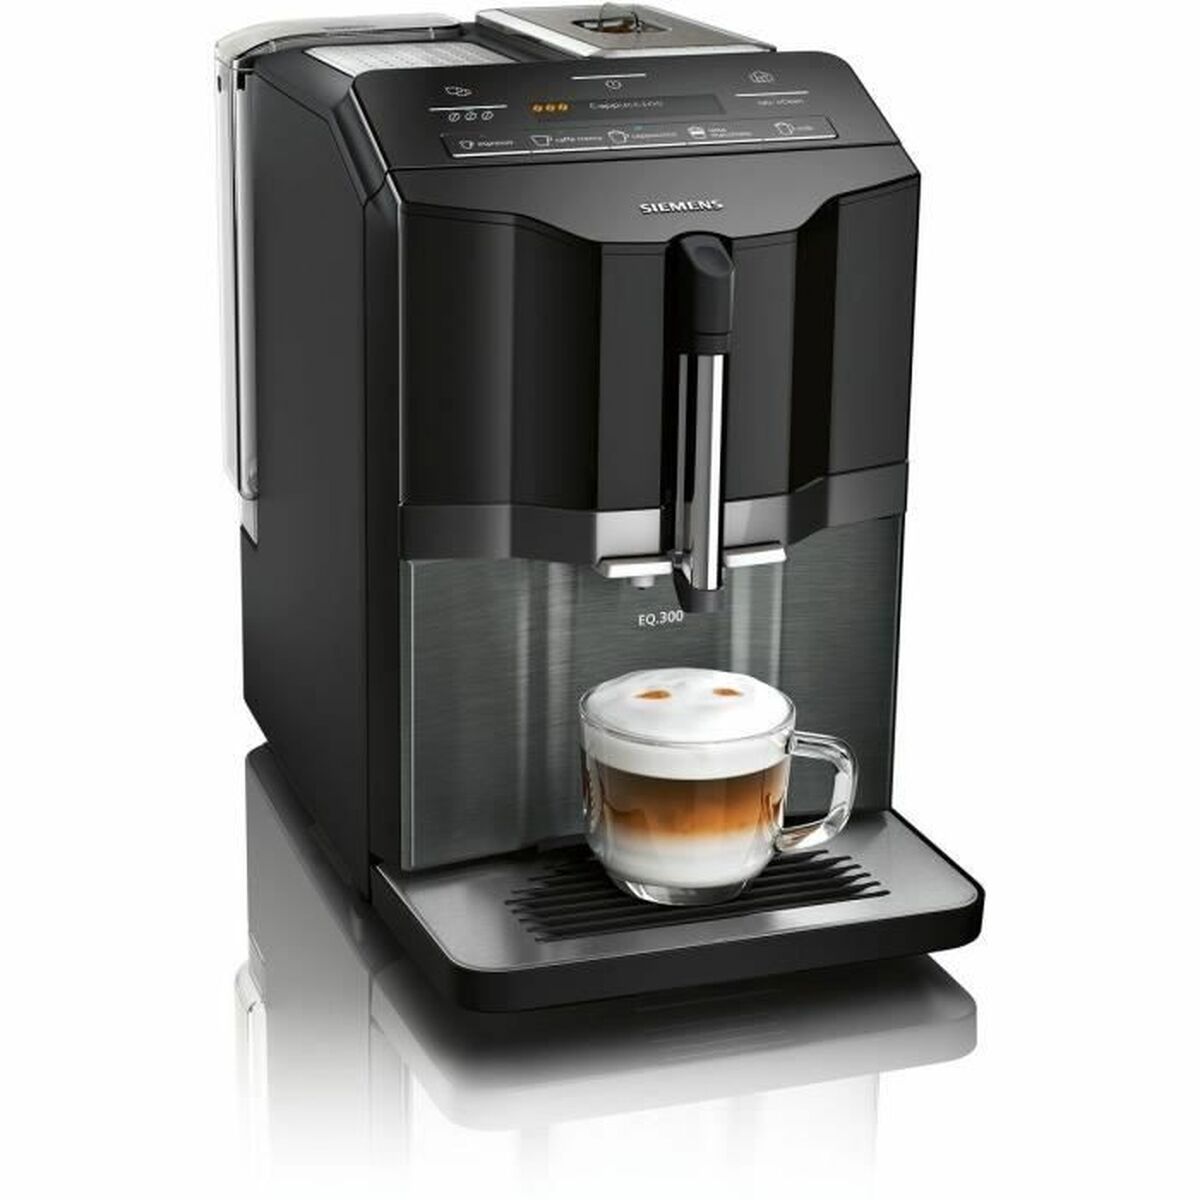 Superautomatische Kaffeemaschine Siemens AG Schwarz 1300 W 15 bar - CA International 